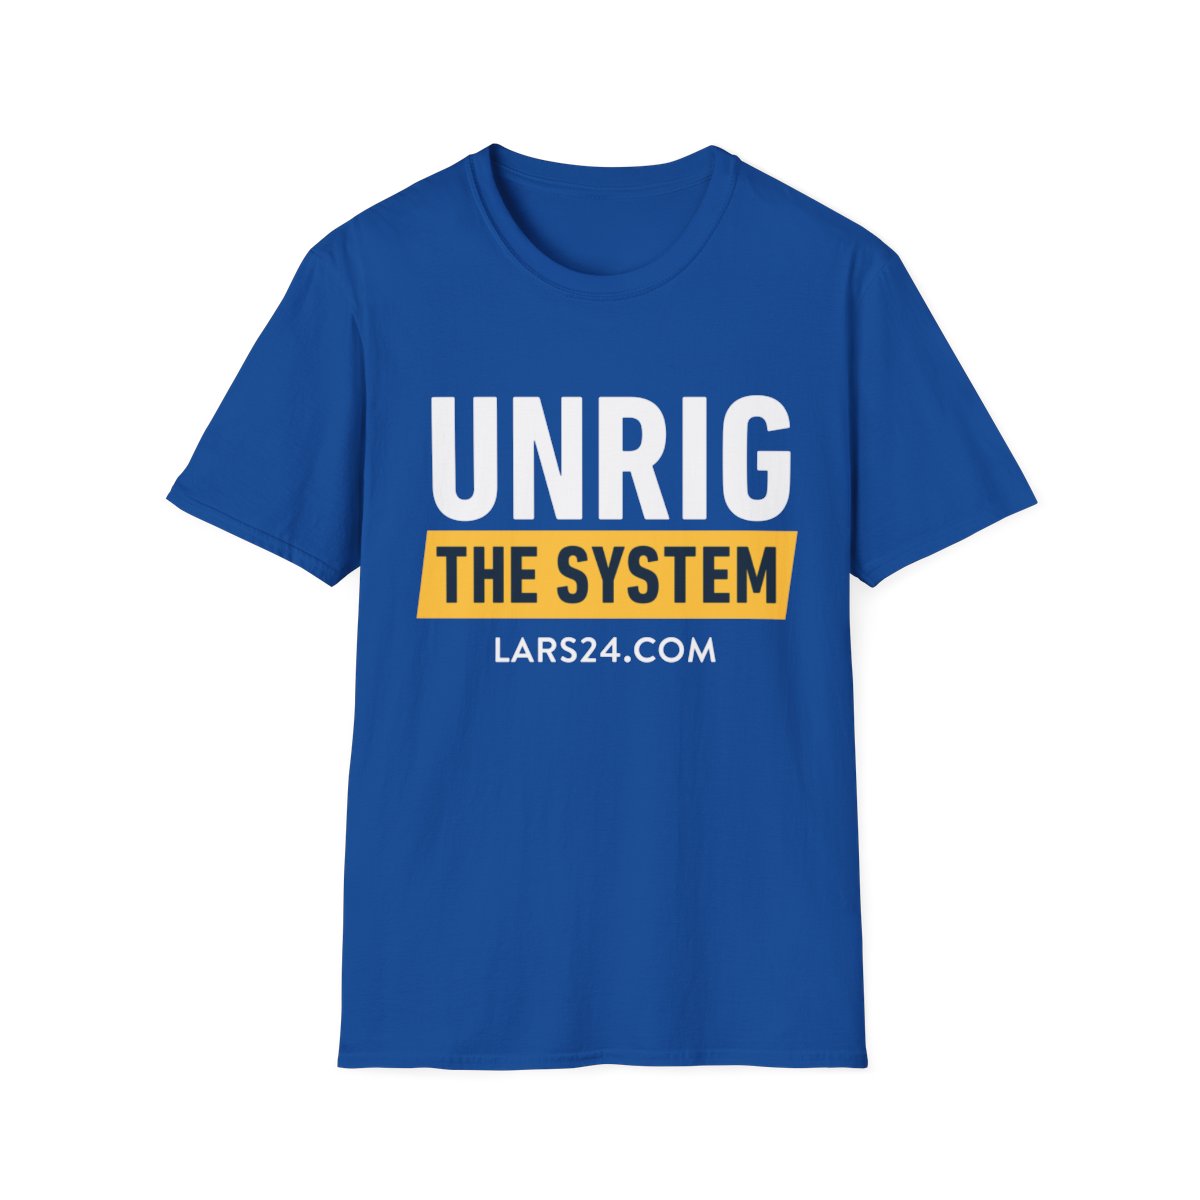 UNRIG - Black/Dark - T-Shirt - Unisex Softstyle product thumbnail image